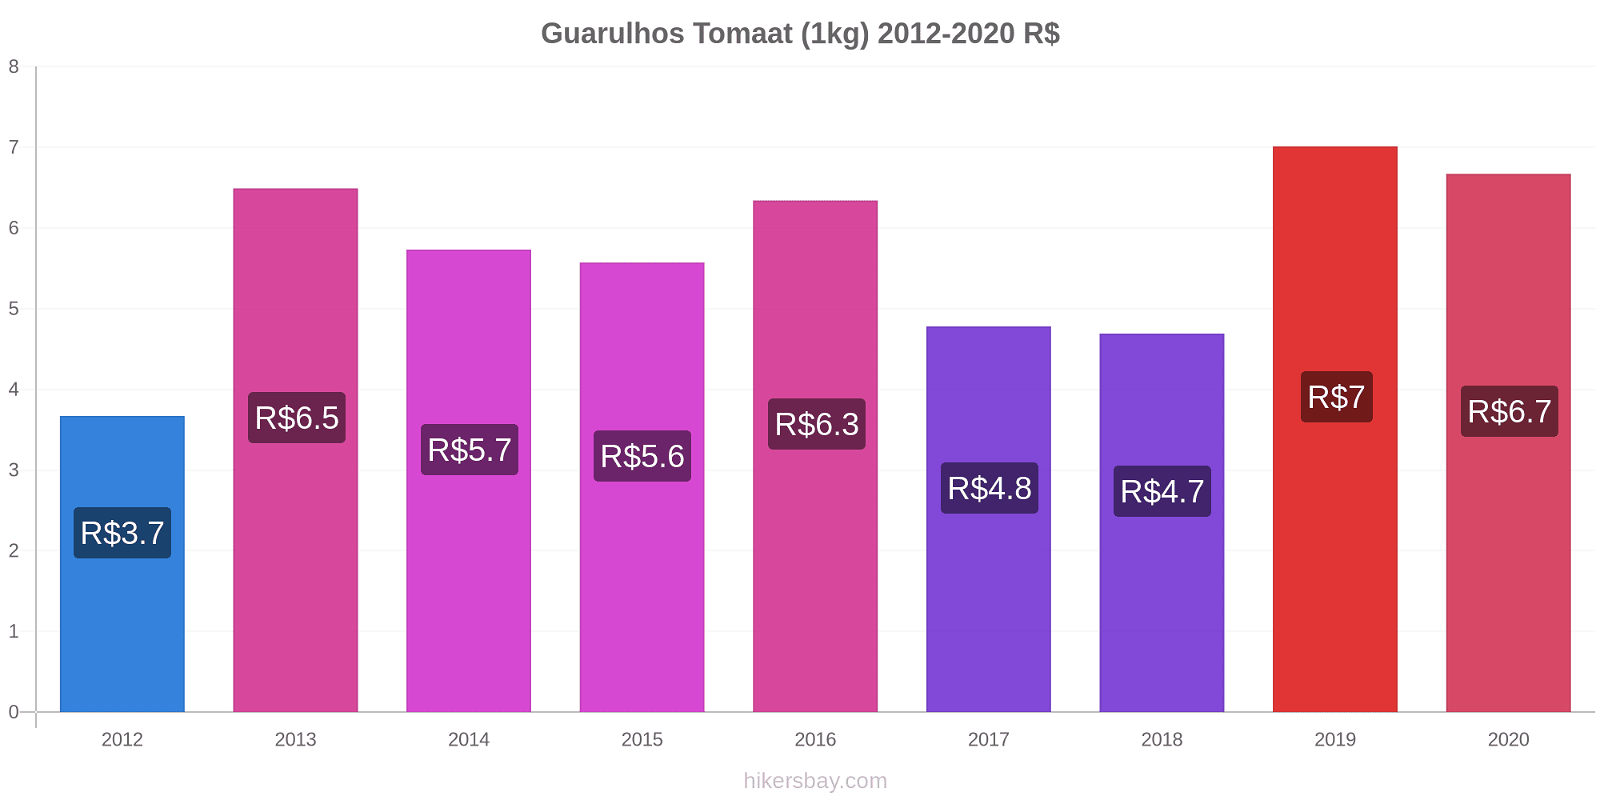 Guarulhos prijswijzigingen Tomaat (1kg) hikersbay.com